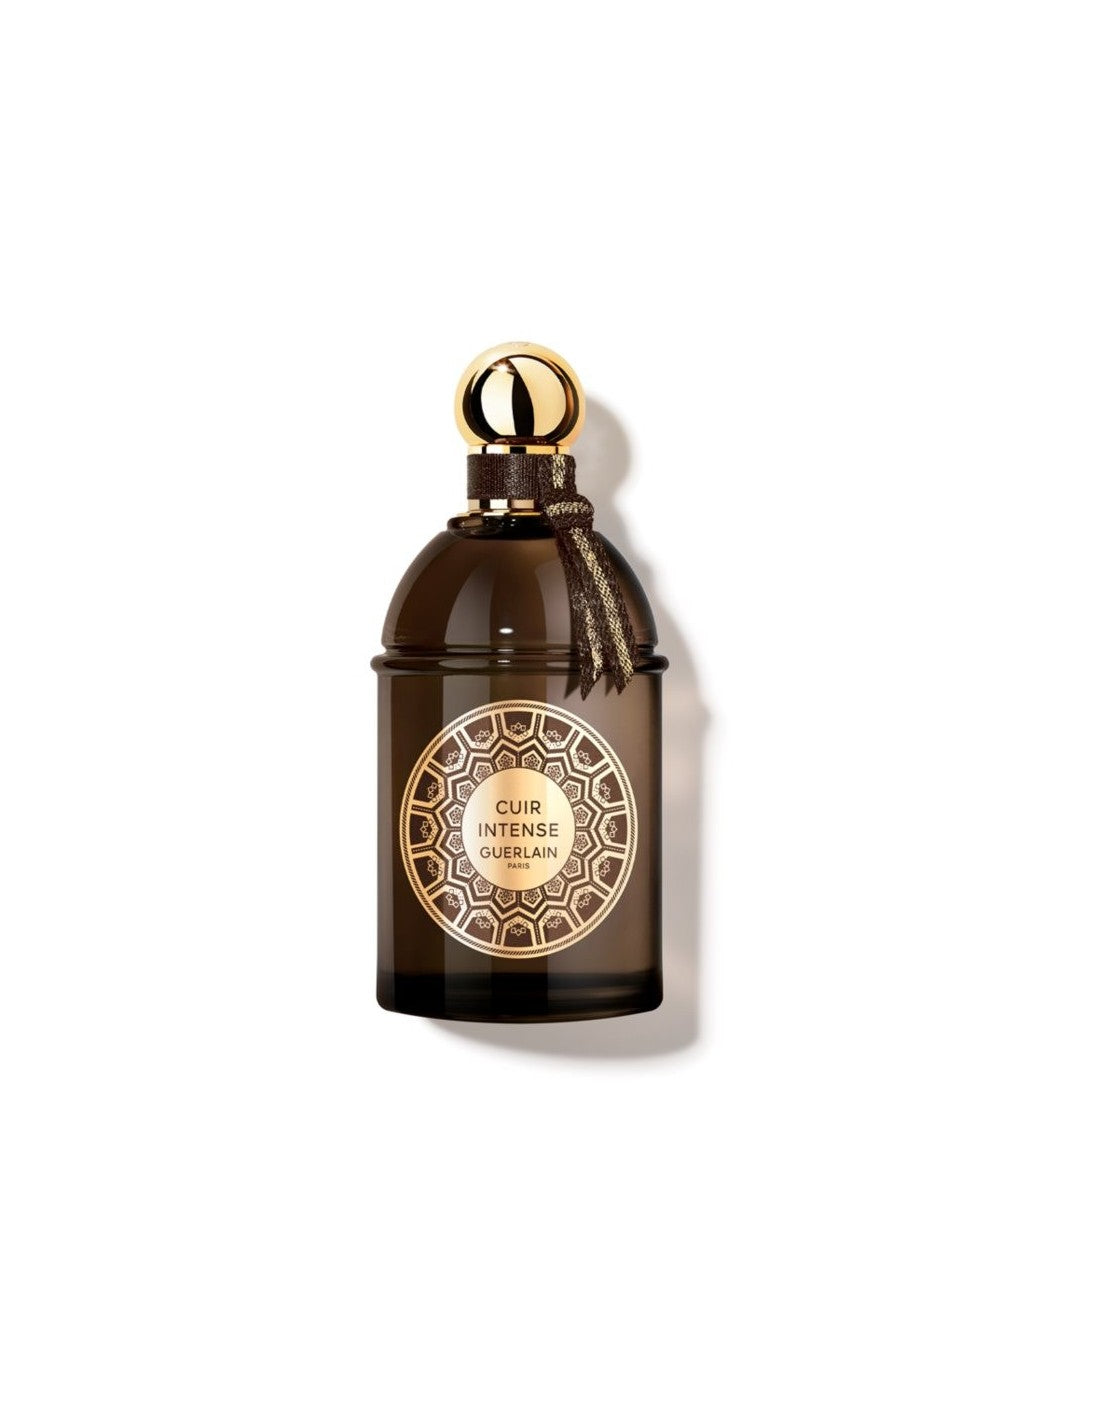 Guerlain Les Absolus d Orient Cuir Intense Eau de Parfum, 125 ml - Profumo unisex